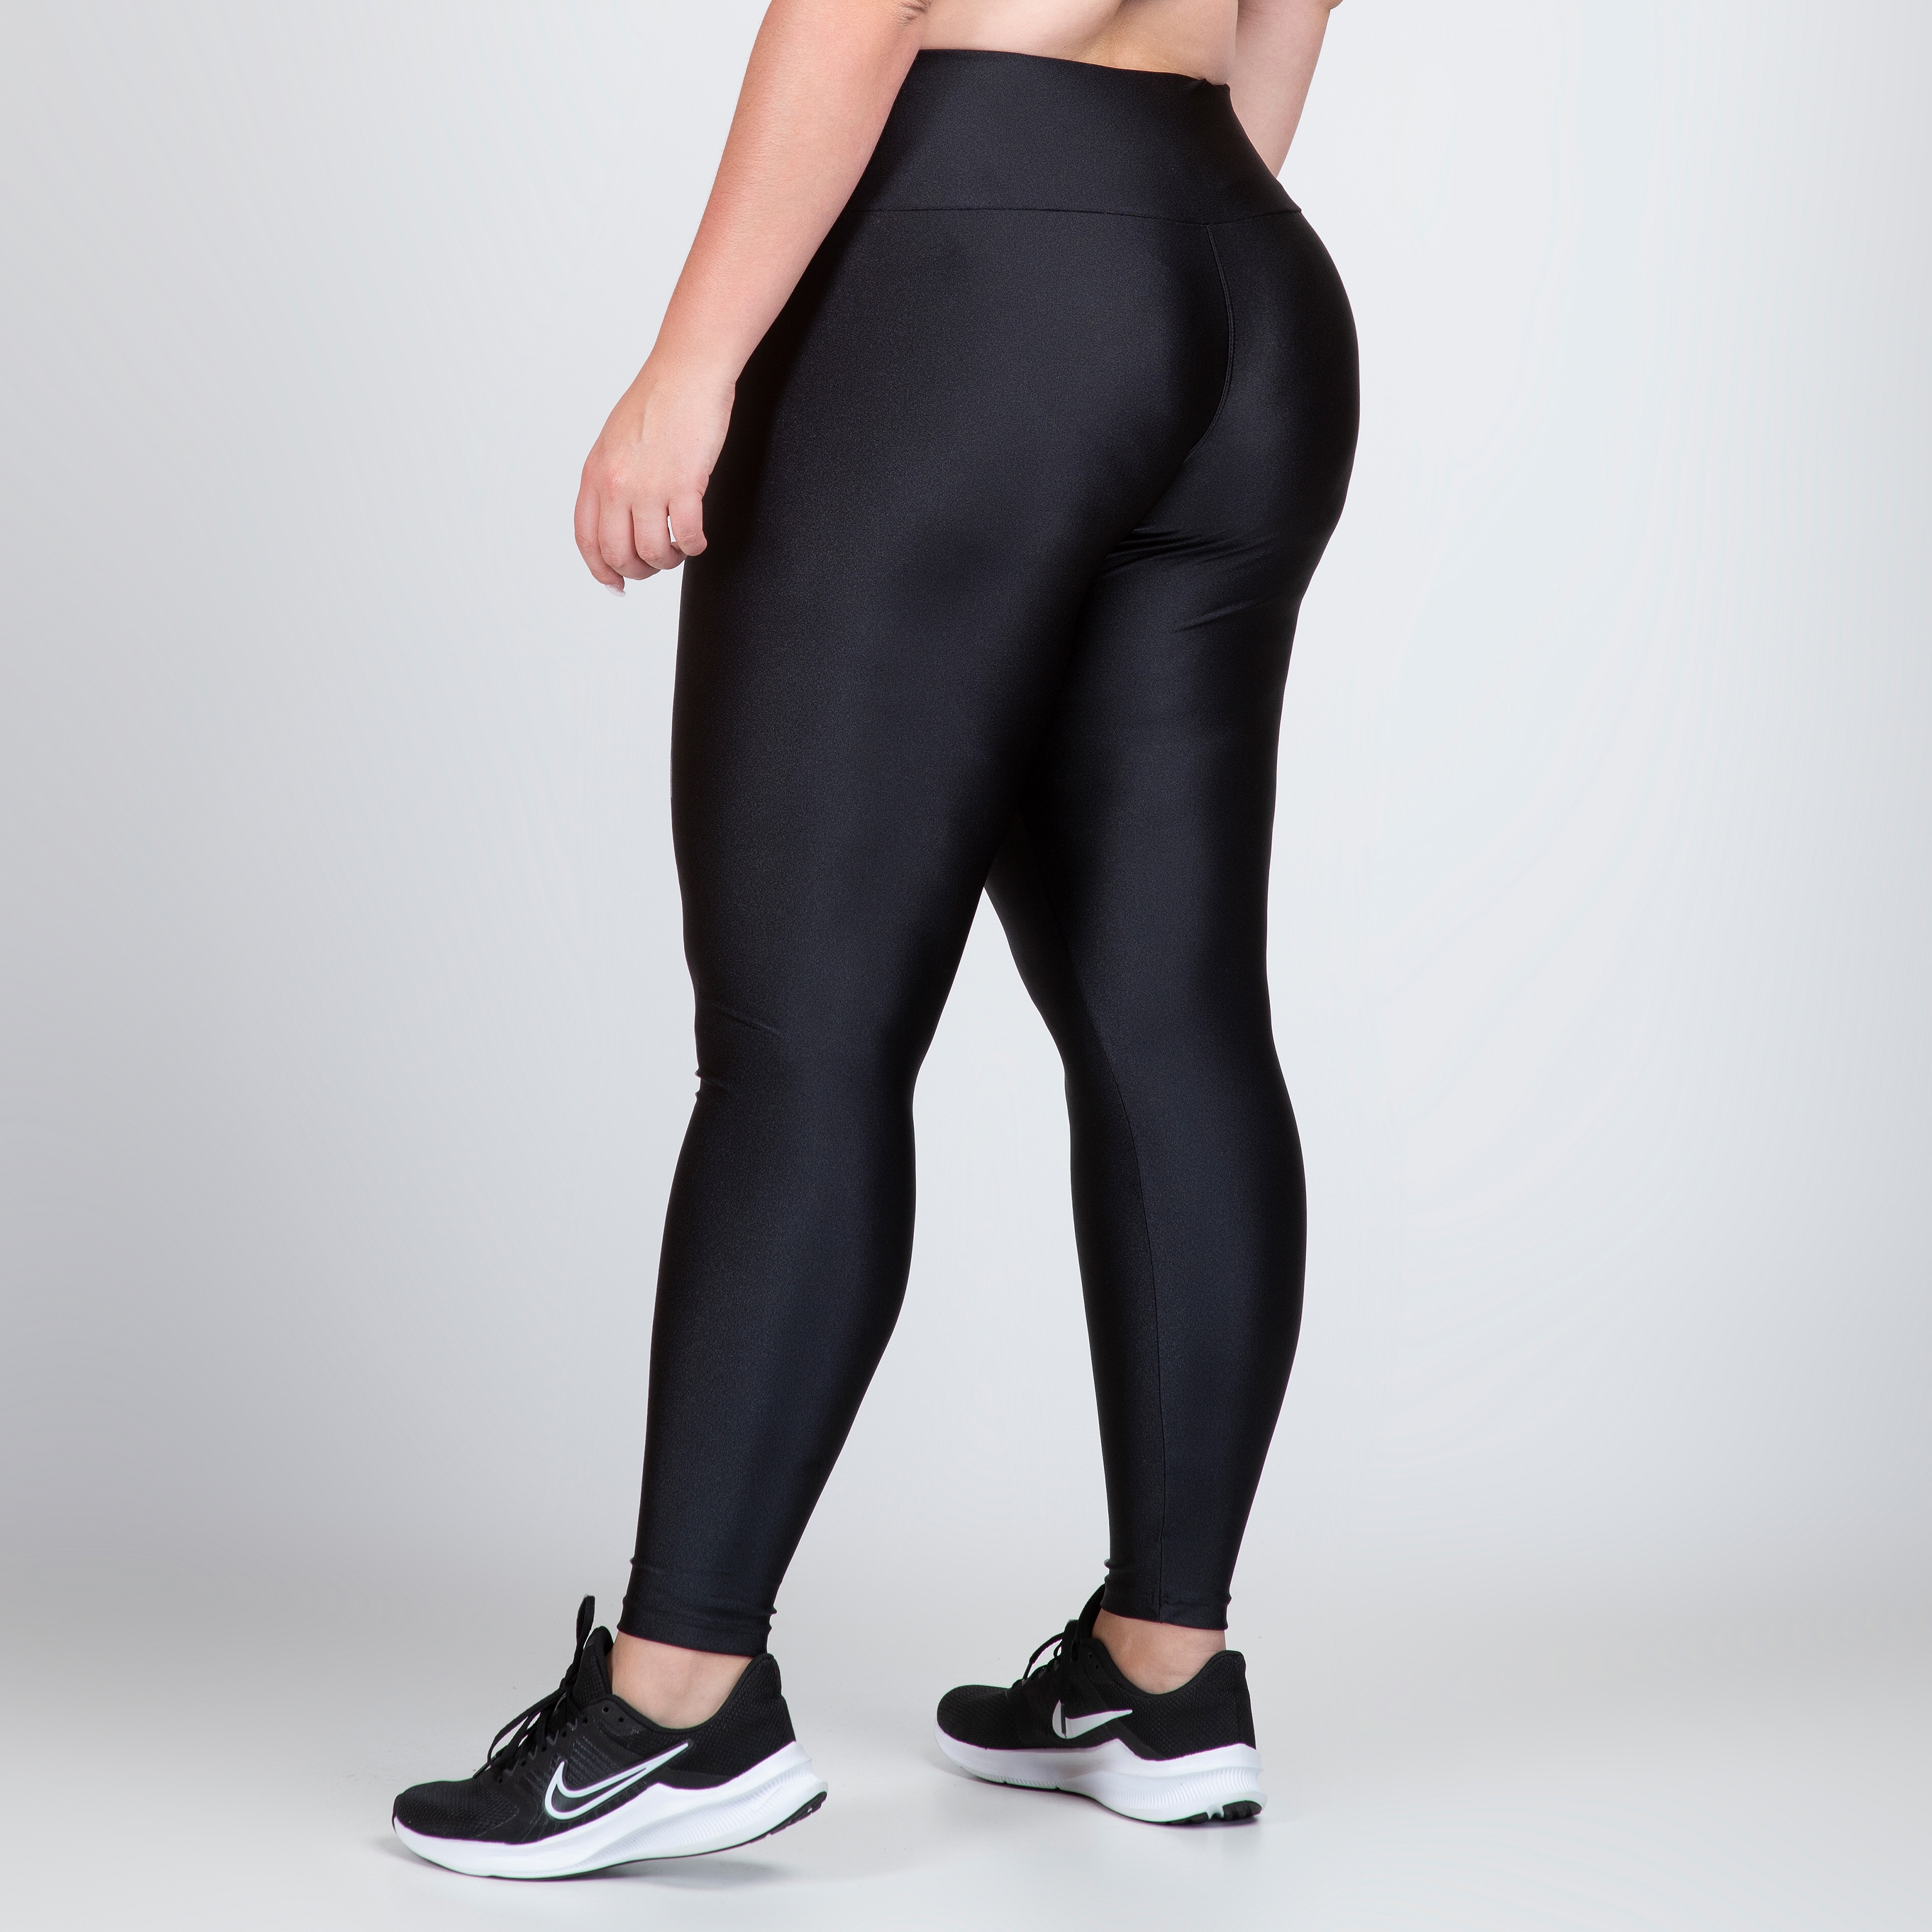 Calça Legging Plus Size Metalizada Milena - Físico Fitness